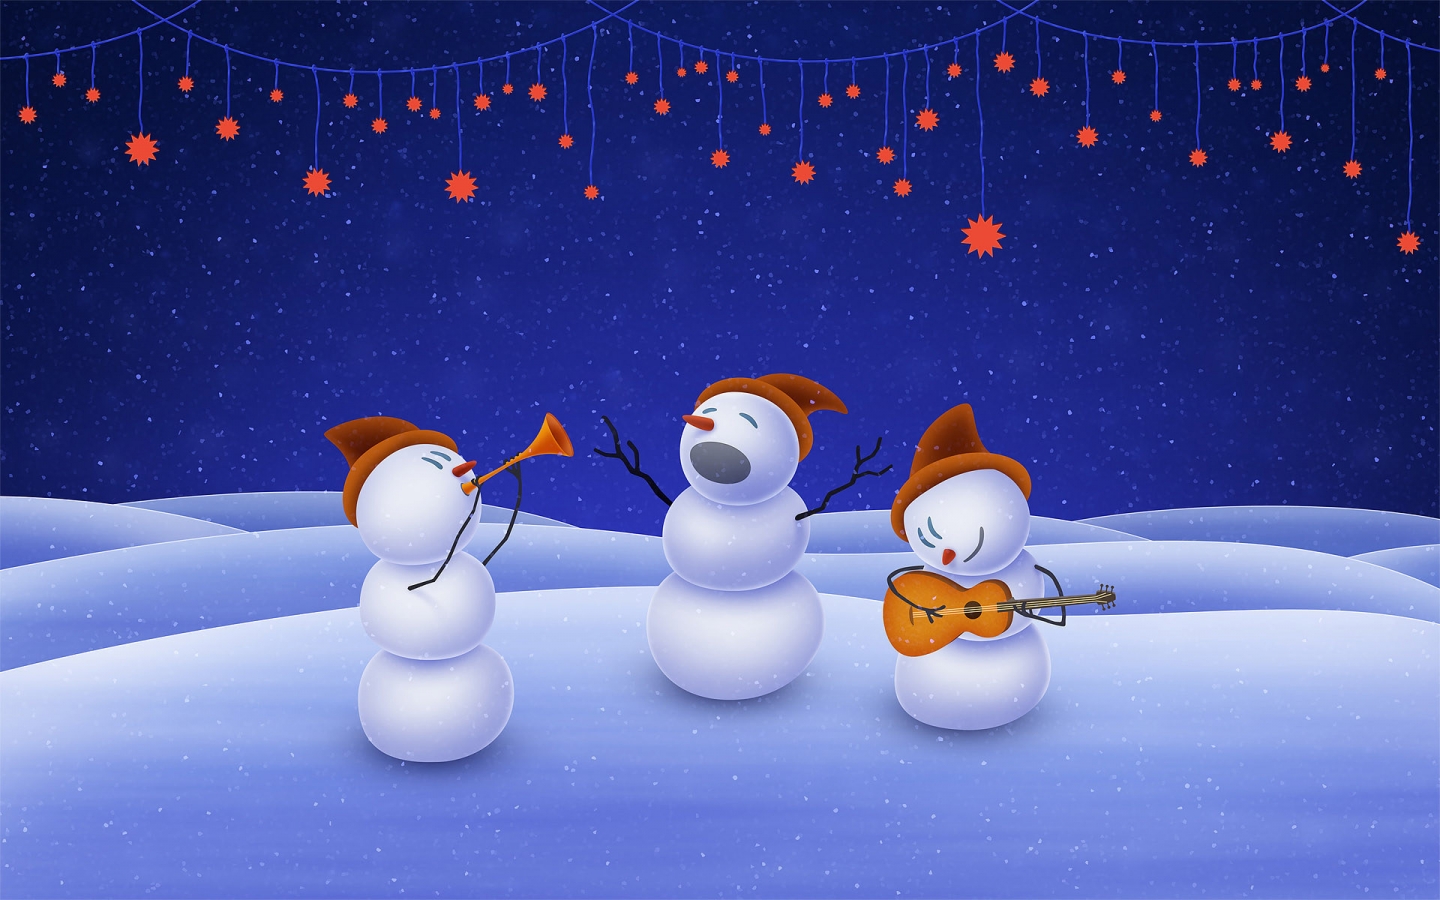 Snowmen Band for 1440 x 900 widescreen resolution